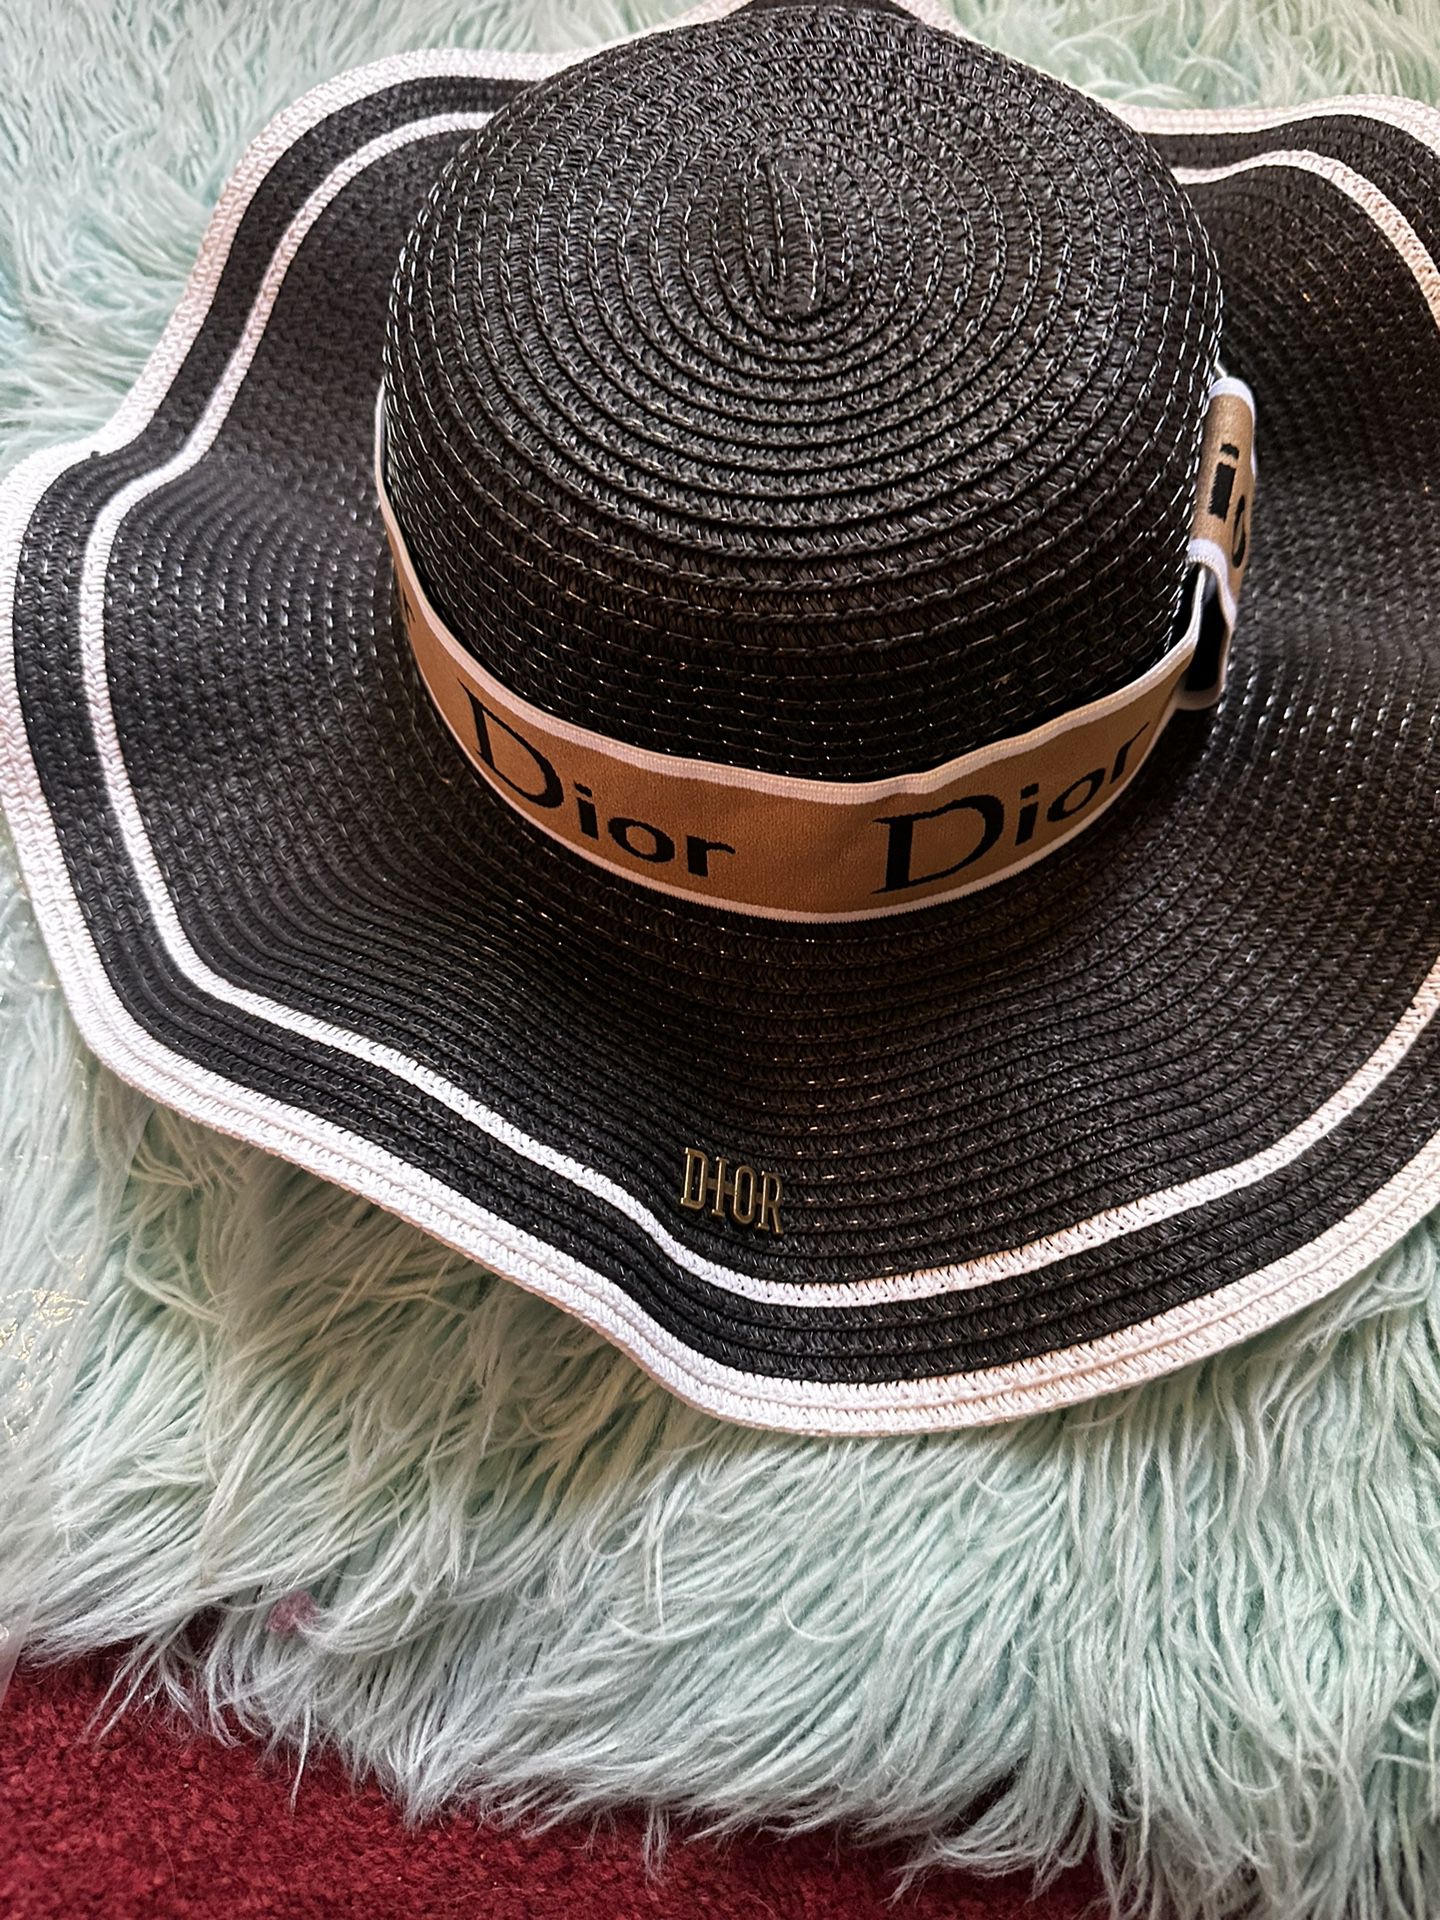 Fancy black hat